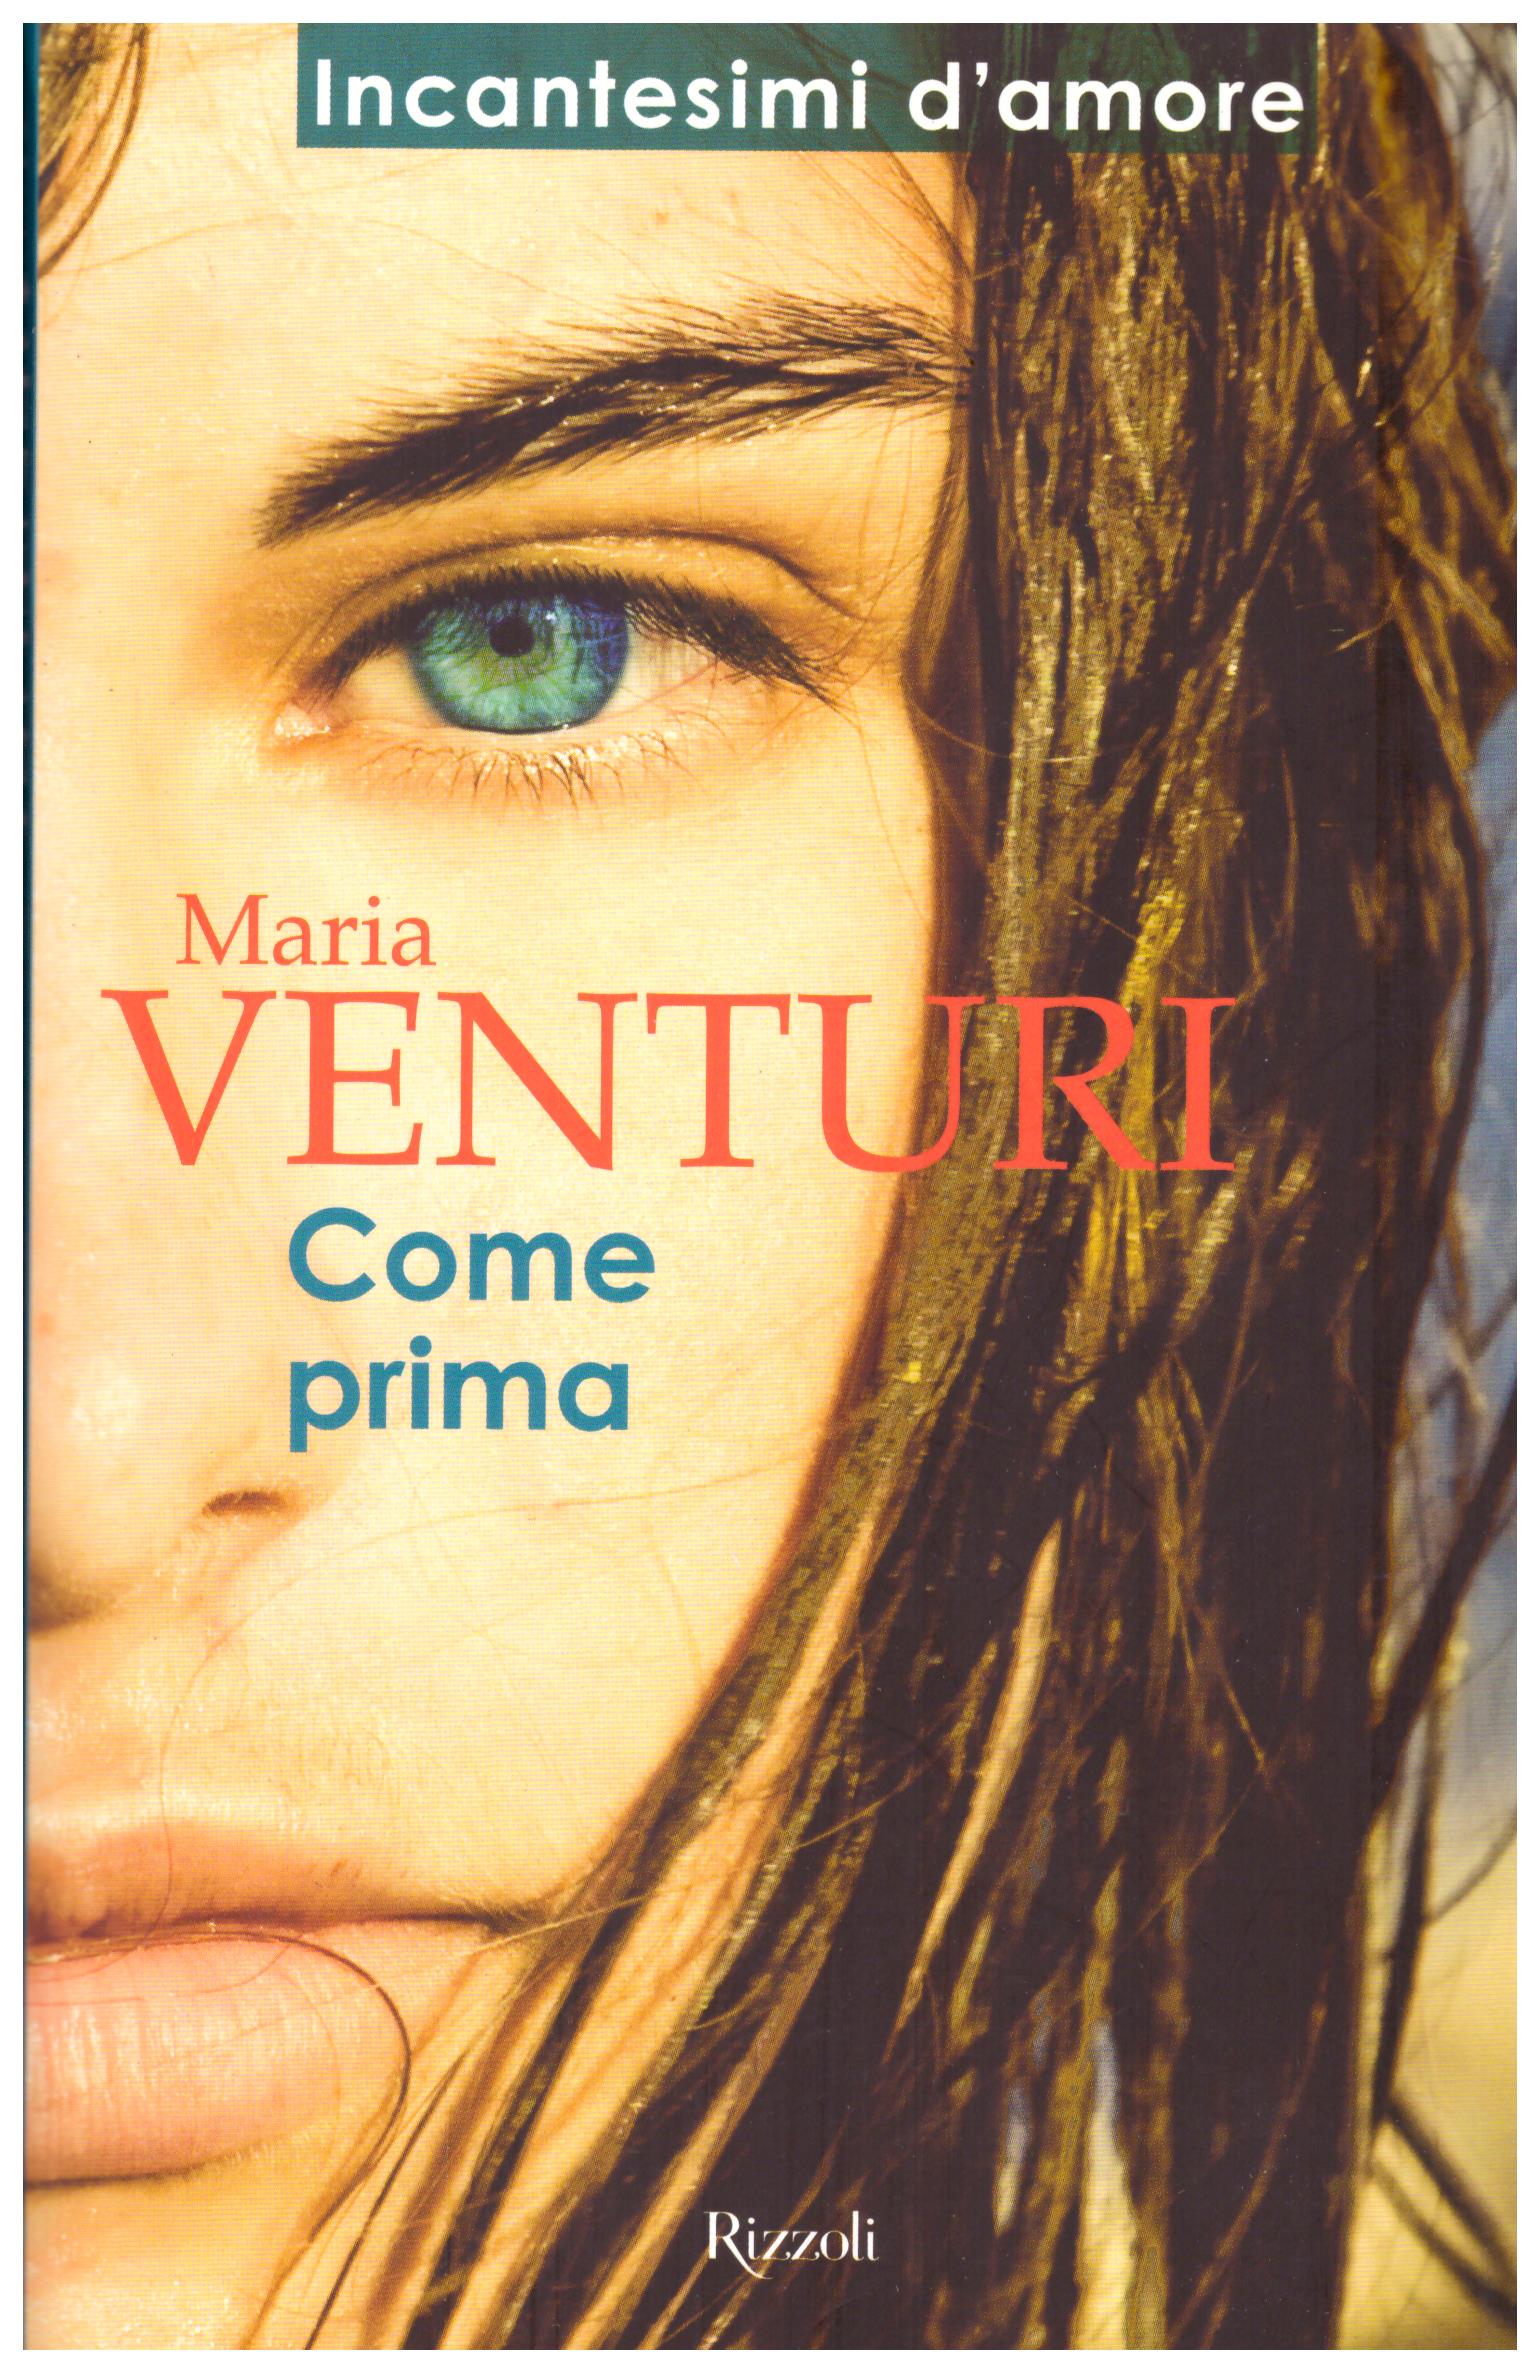 Titolo: Come prima Autore: Maria Venturi  Editore: Rizzoli, 2011